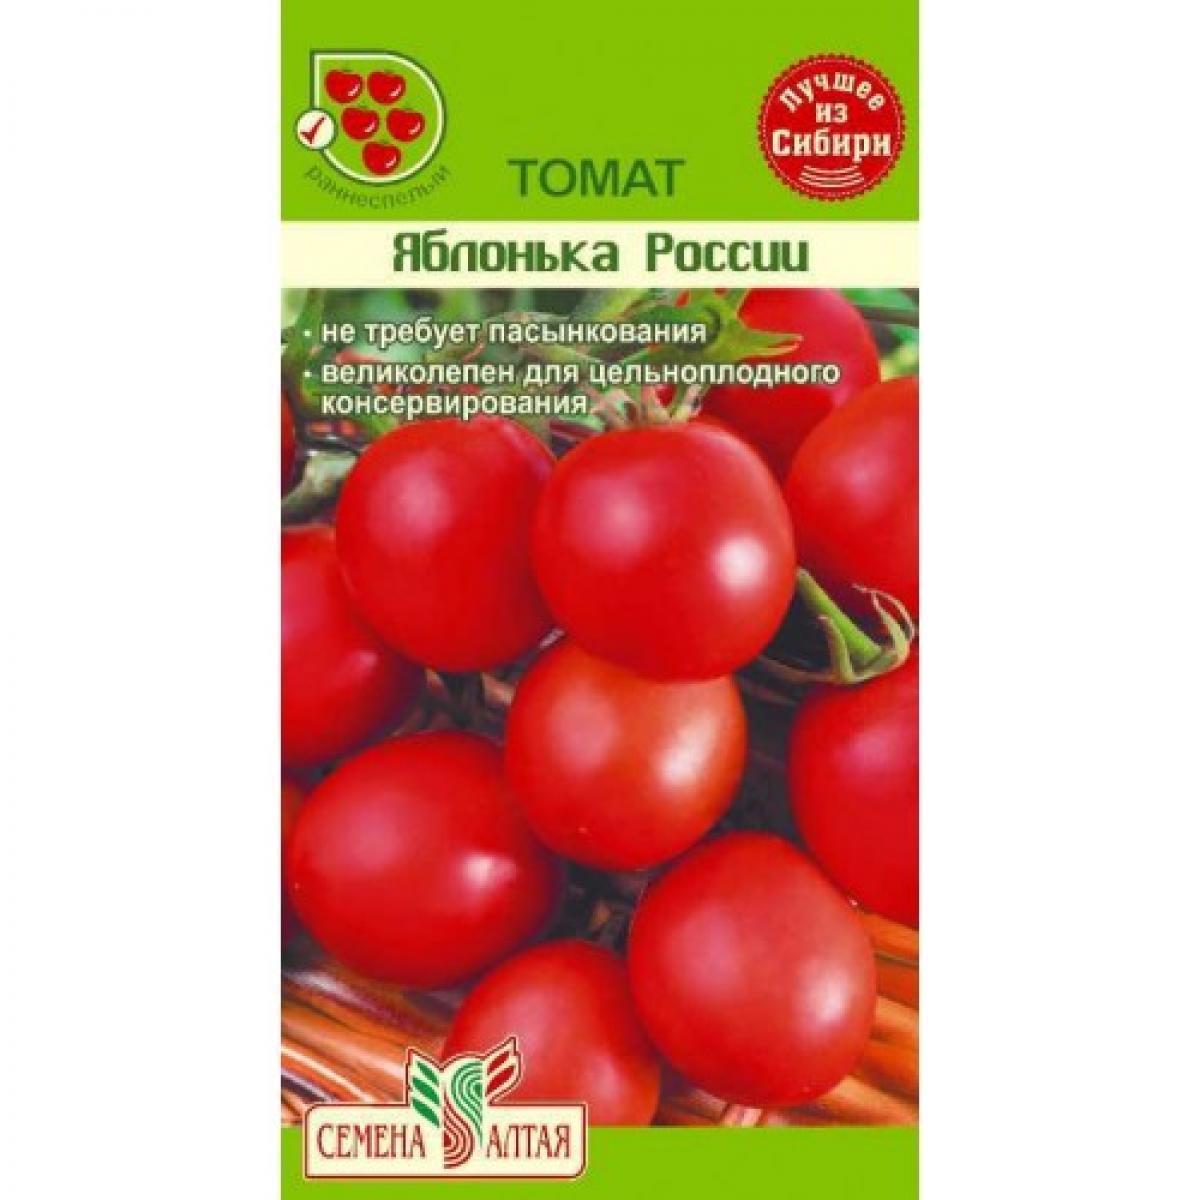 Томат яблонька россии: описание, урожайность сорта, отзывы, фото